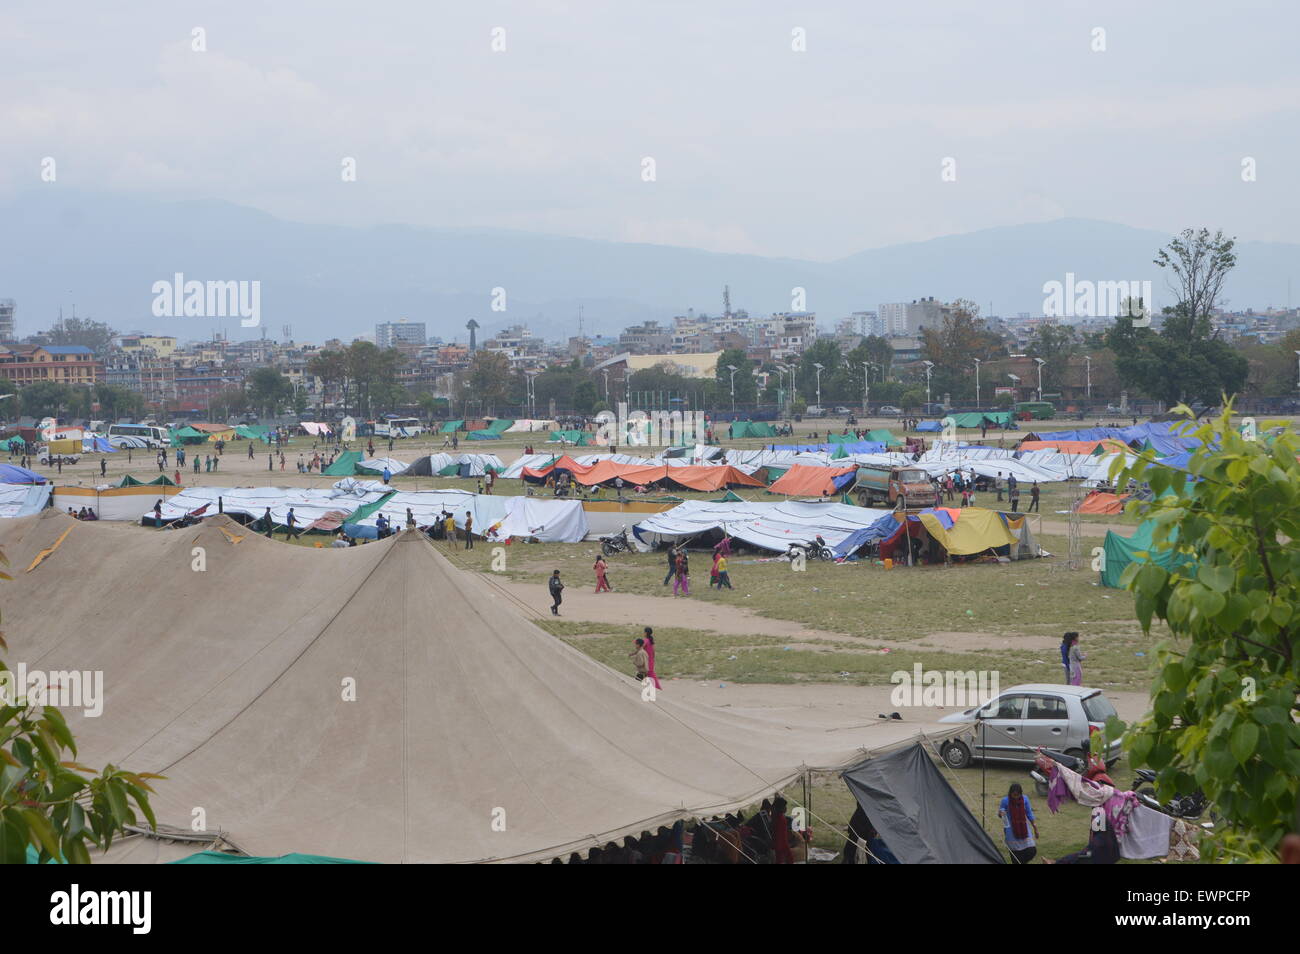 Überlebende der 7.9 Erdbeben, das Kathmandu am 25. April 2015 getroffen Leben in Zelten, die von der nepalesischen Armee an verschiedenen Orten der Freiland-Bereich gemacht.  Das Erdbeben in Nepal (Samstag, 25. April 2015) hat die Region verwüstet. Die aktuelle Zahl der Todesopfer von 7,9-Beben hat schätzungsweise auf 4.356 gestiegen und Berichte schlagen jetzt zahlen könnte sogar so hoch wie 10.000 zu erreichen. Vereinten Nationen-Koordinatoren in Nepal haben angekündigt, dass 8 Millionen Menschen in 39 Stadtteile - mehr als ein Viertel der Bevölkerung betroffen sind. Von mindestens Leben 2 Millionen Menschen in 11 Bezirke se Stockfoto